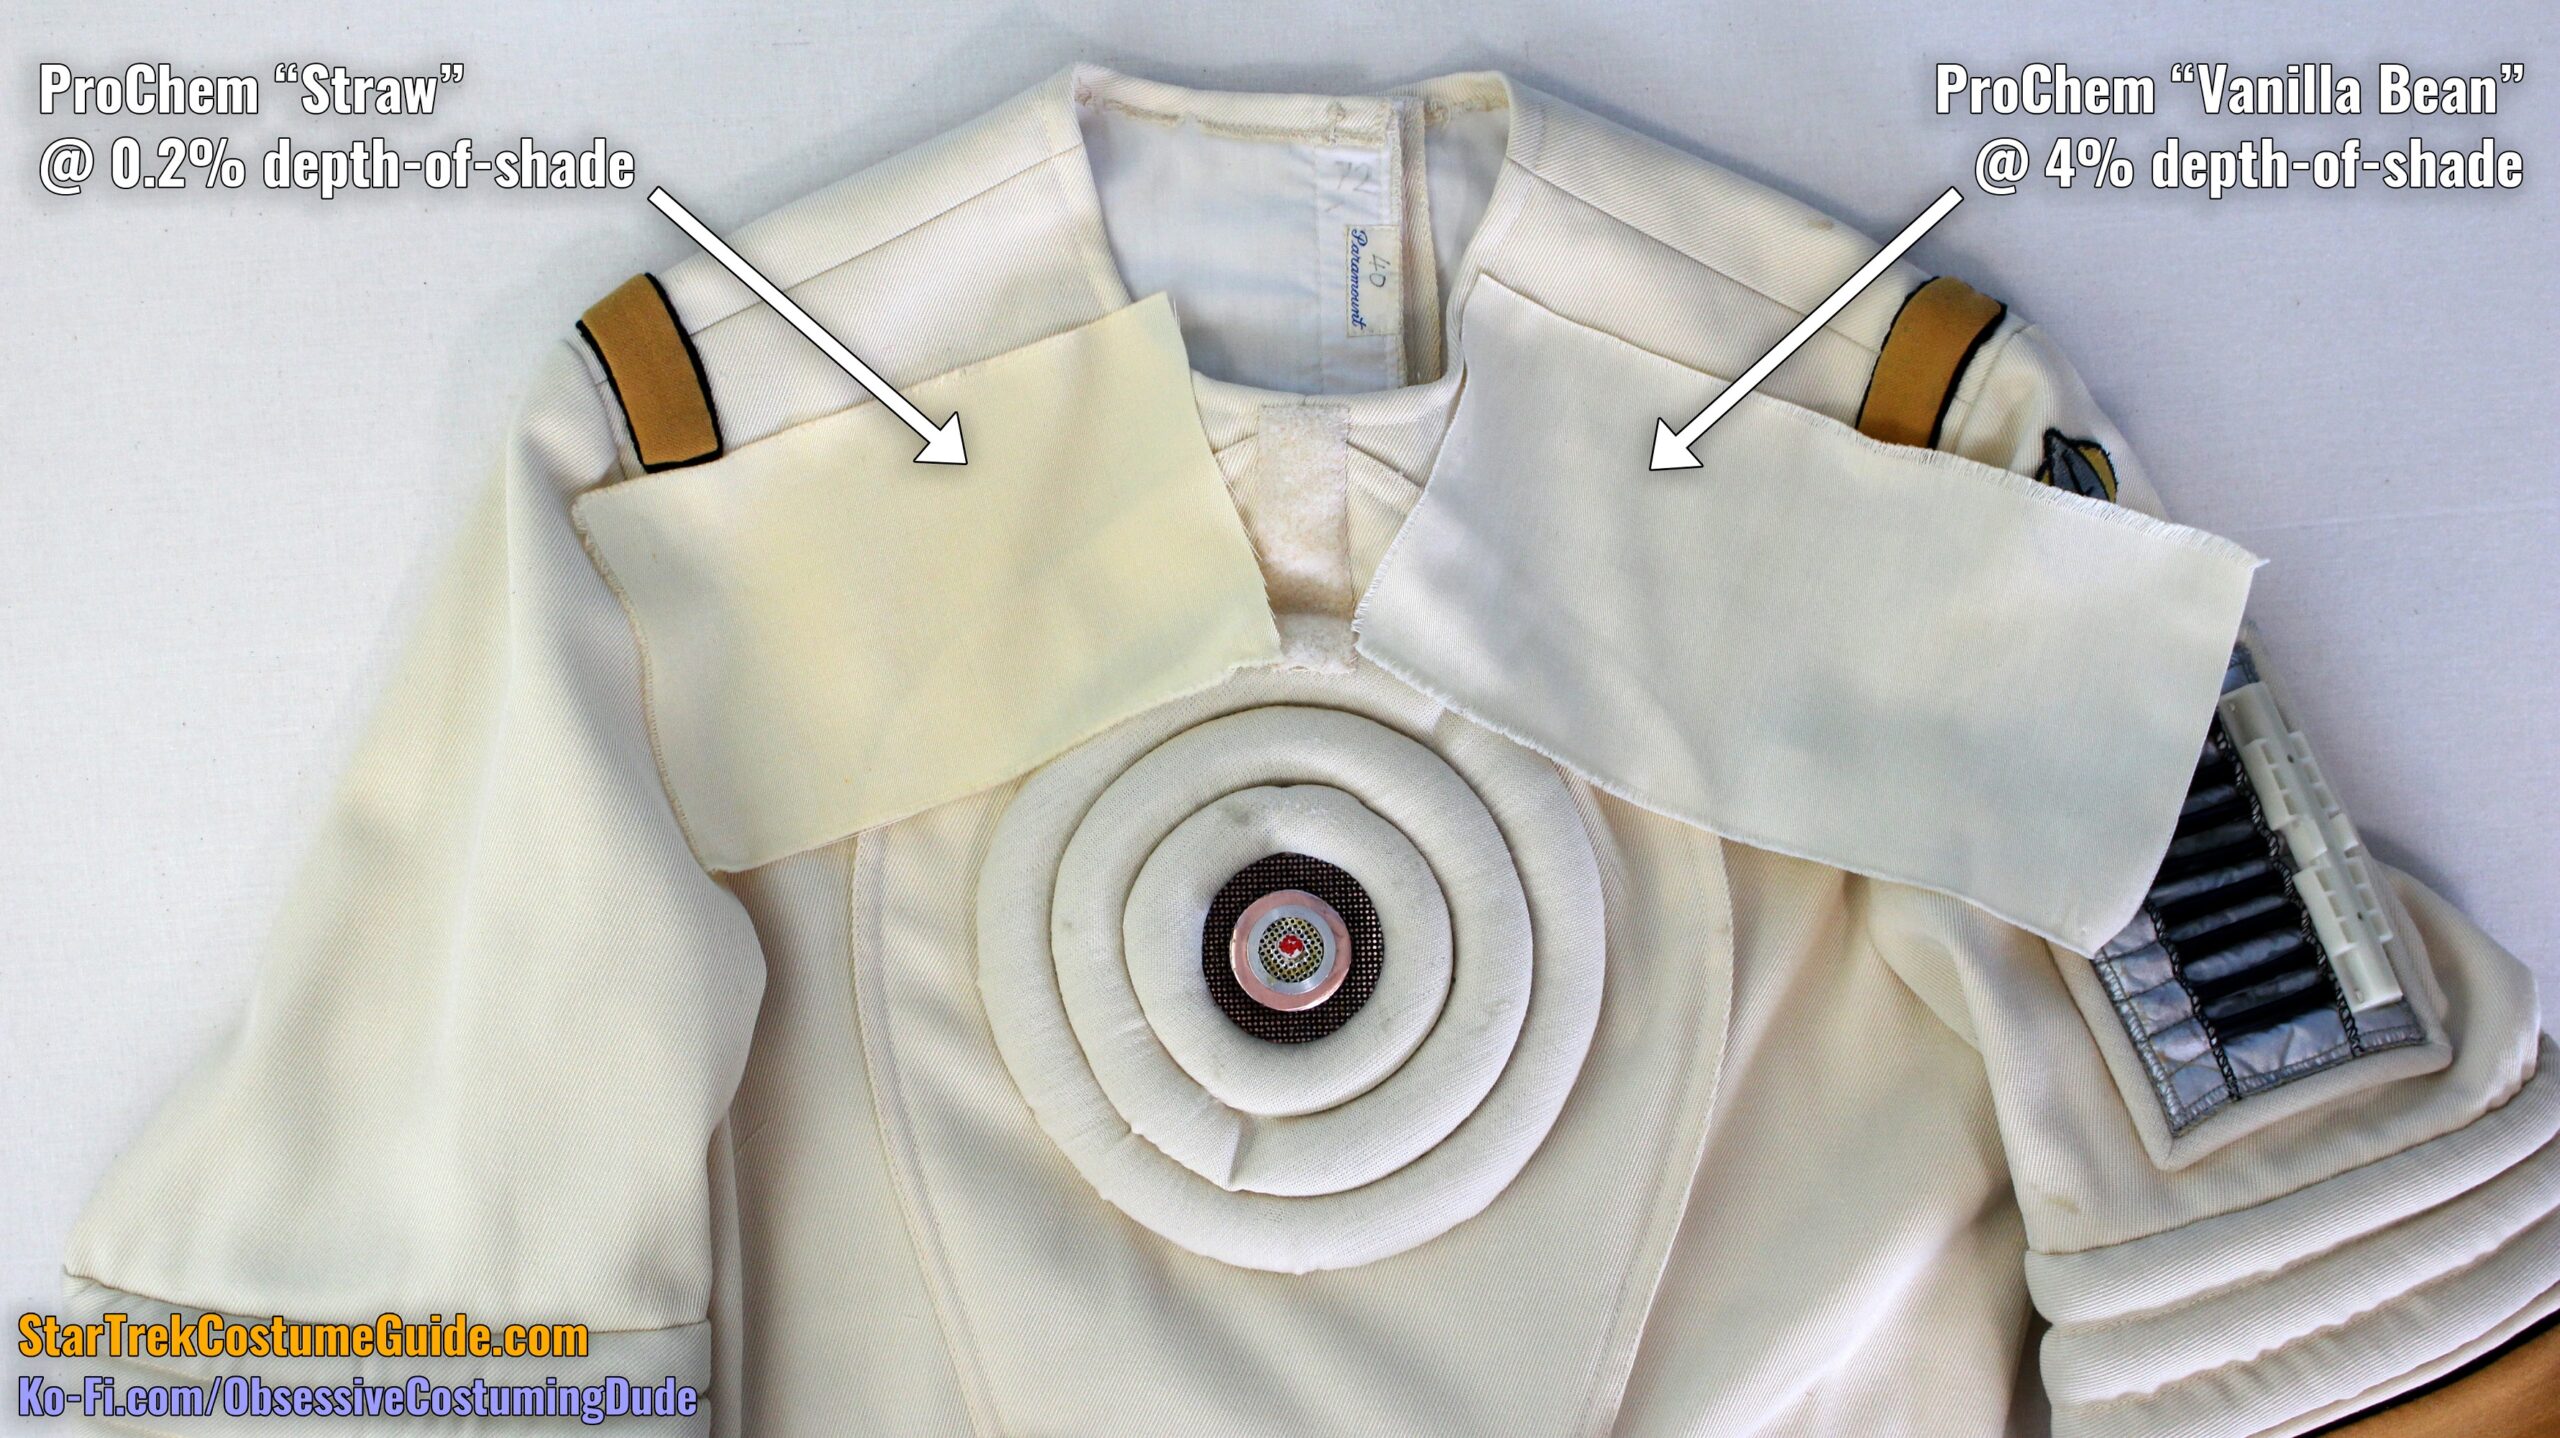 Engineering radiation suit sewing tutorial - Star Trek Costume Guide